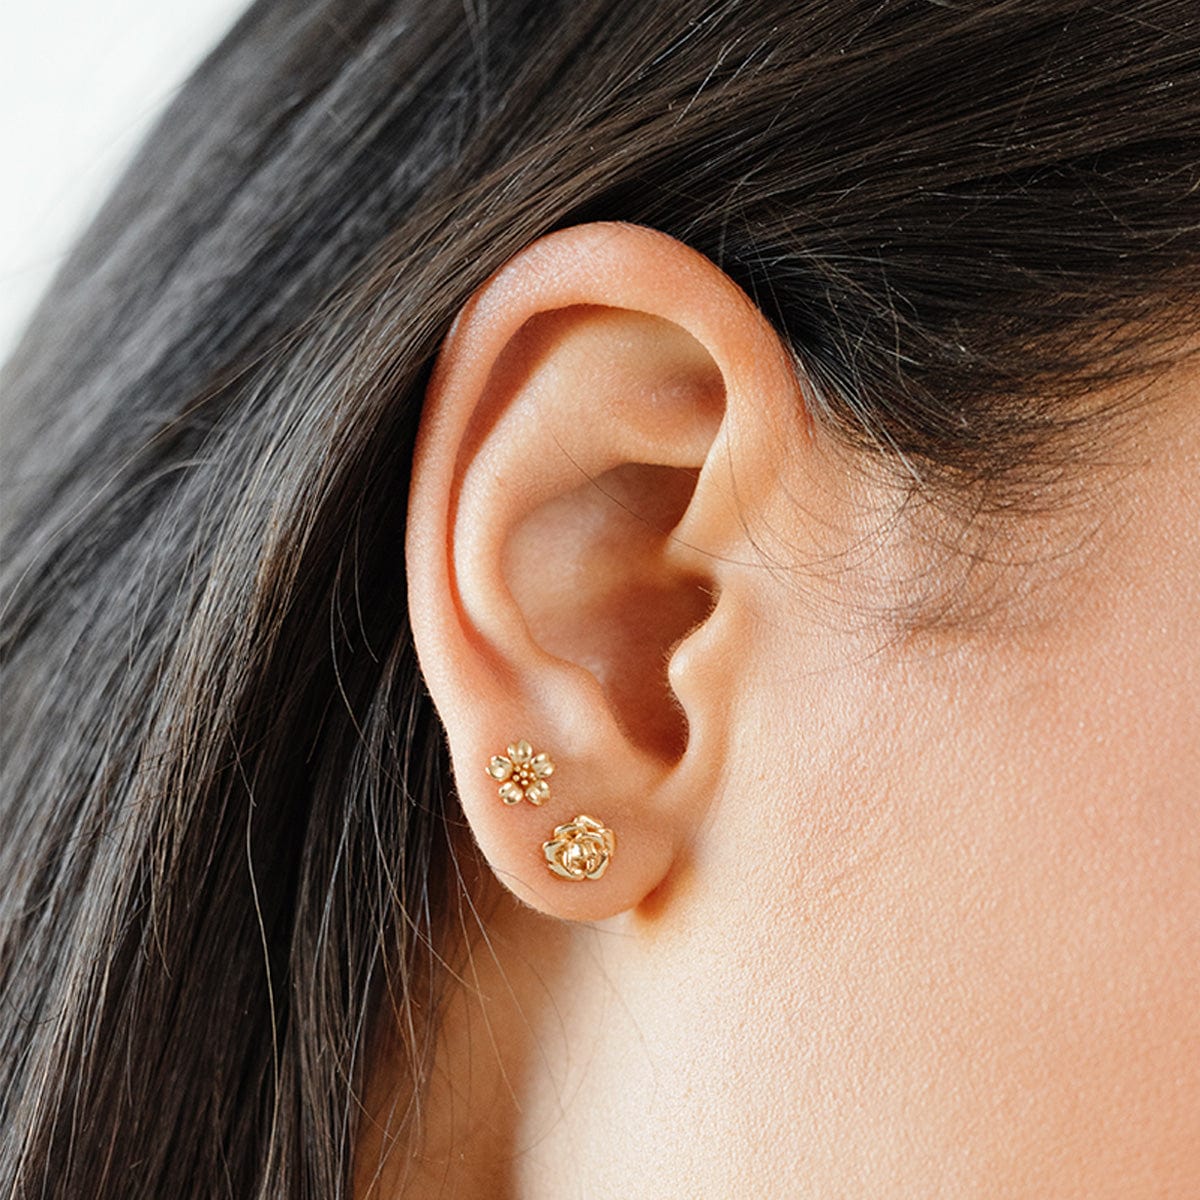 September Birth Flower Stud Earrings Gold Vermeil Earring